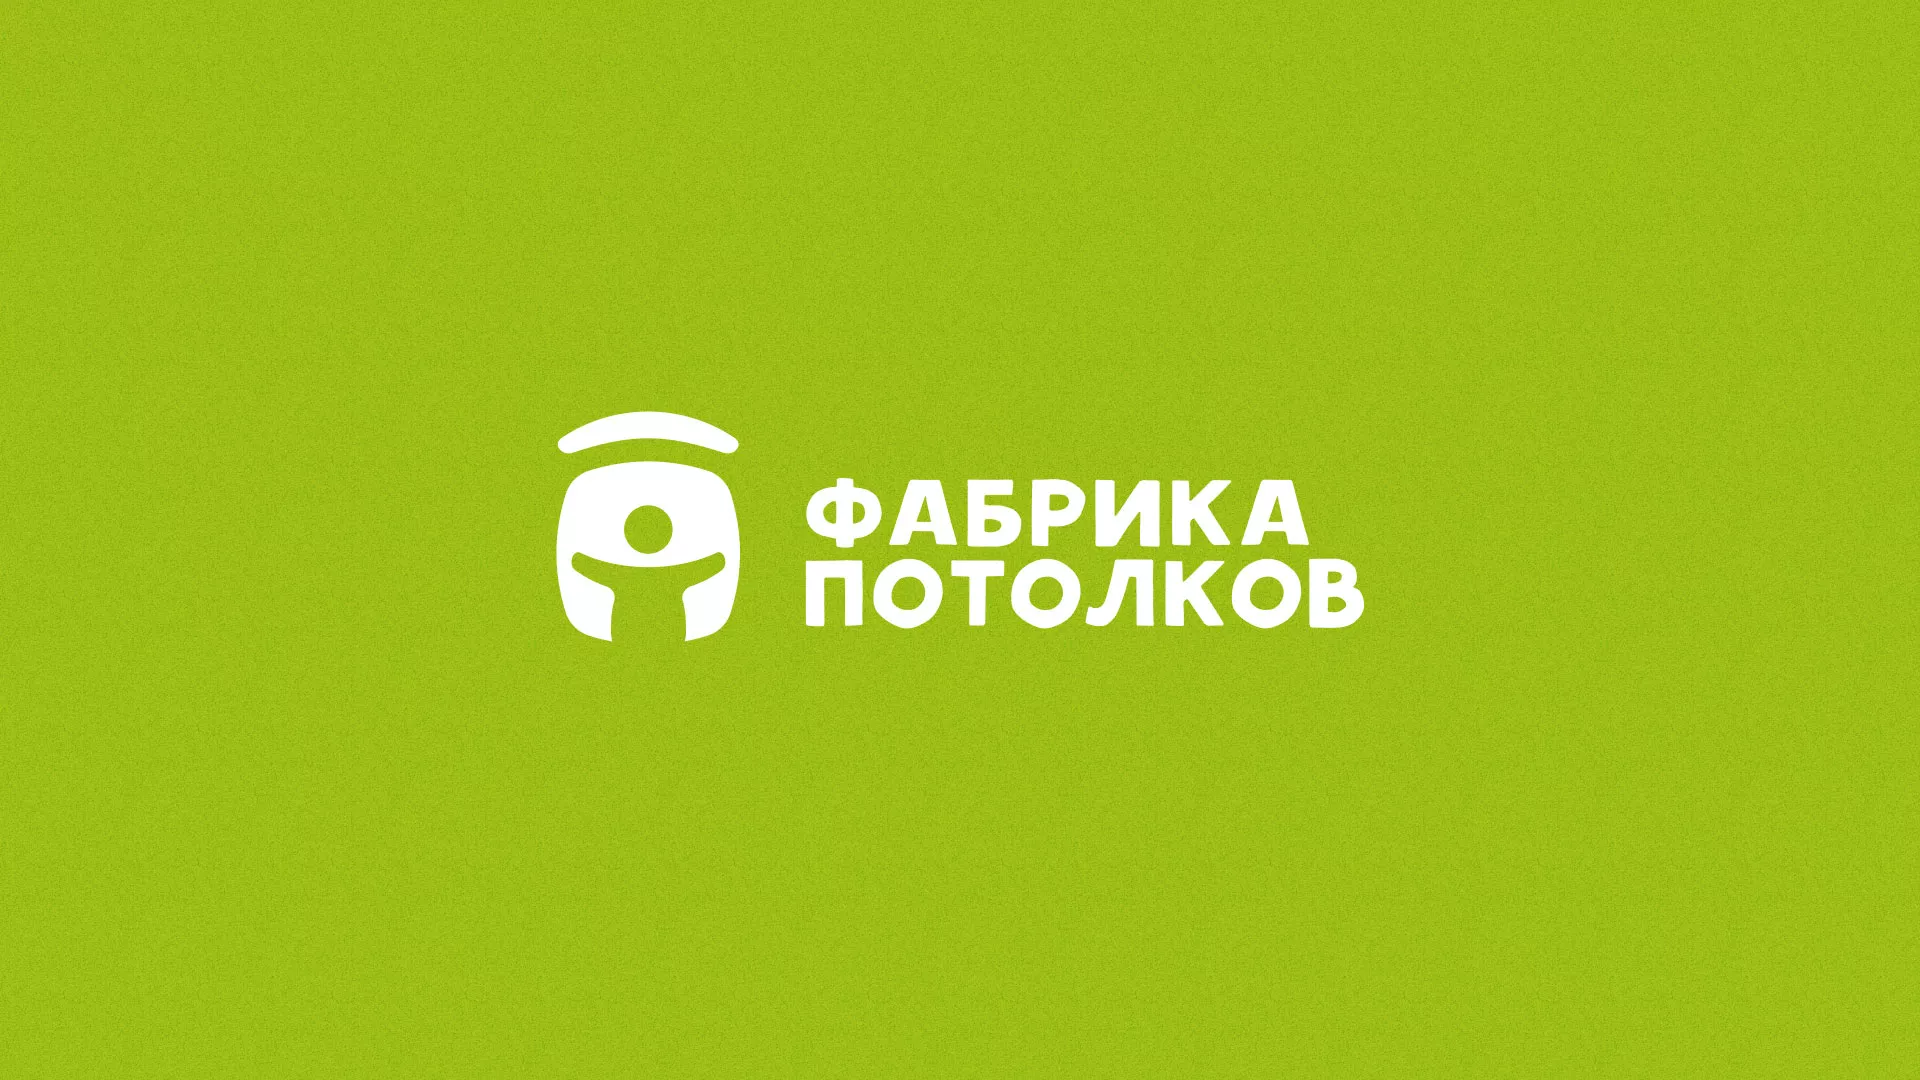 Разработка логотипа для производства натяжных потолков в Выксе